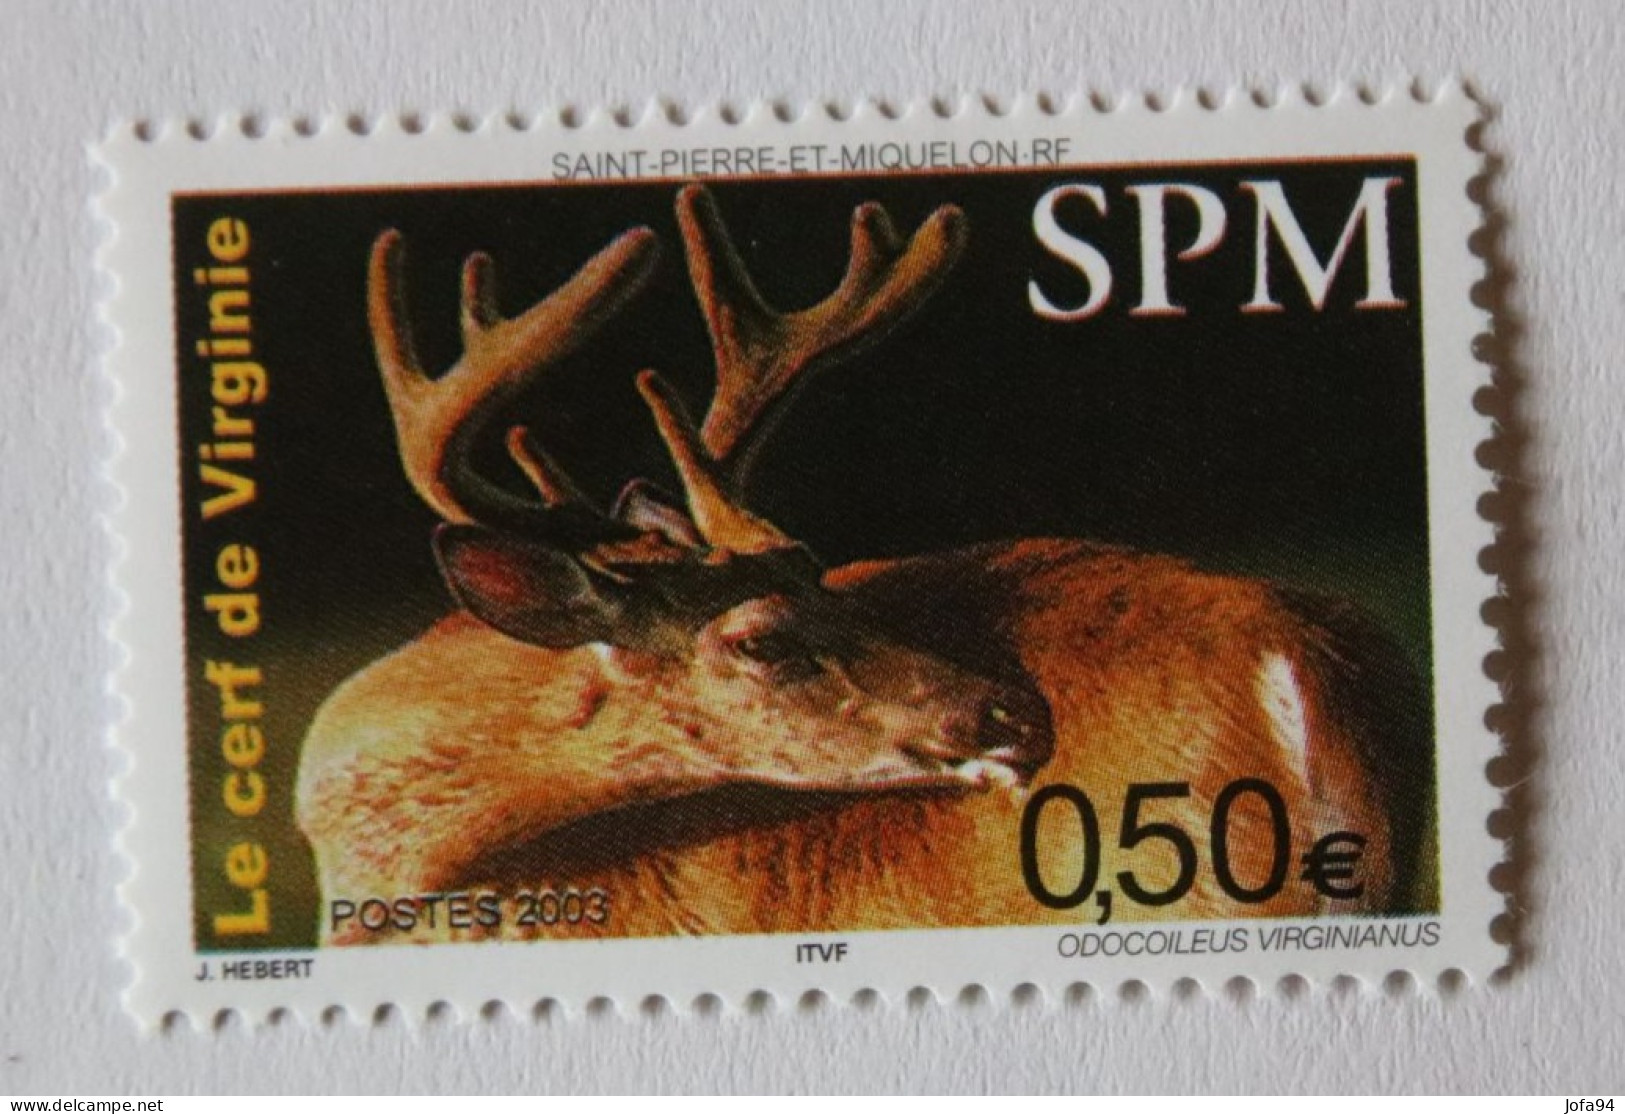 SPM 2003 Faune Le Cerf De Virginie   YT 799  Neuf - Unused Stamps